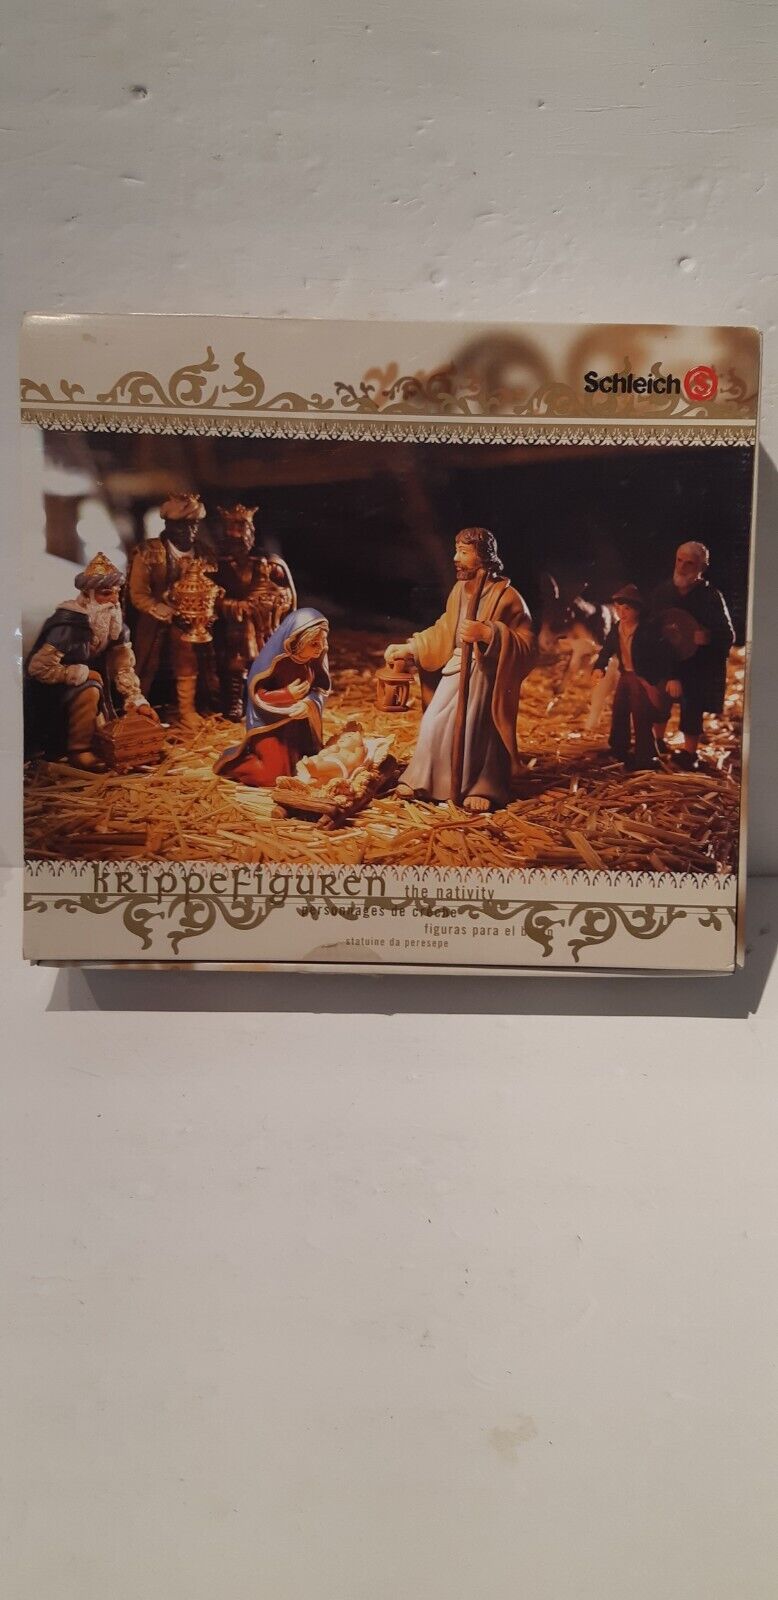 Schleich Krippefiguren Nativity Scene Figures. Made In Germany